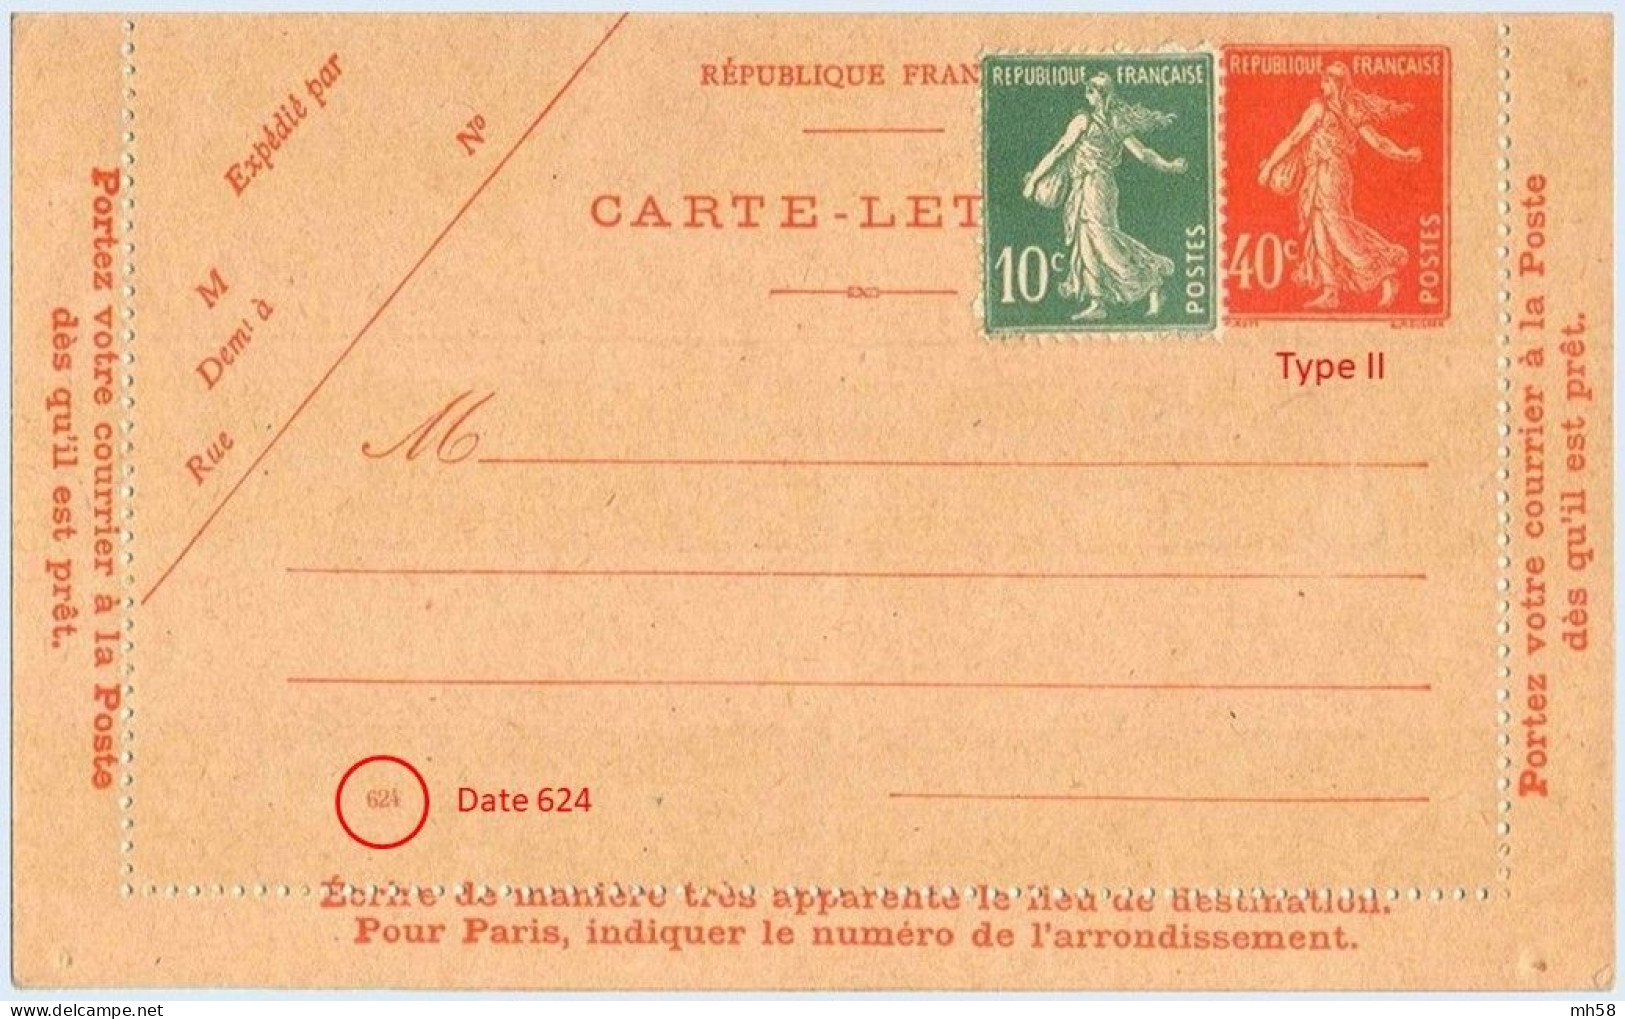 Entier FRANCE - Carte-lettre Date 624 Neuf ** - 40c Semeuse Vermillon - Letter Cards